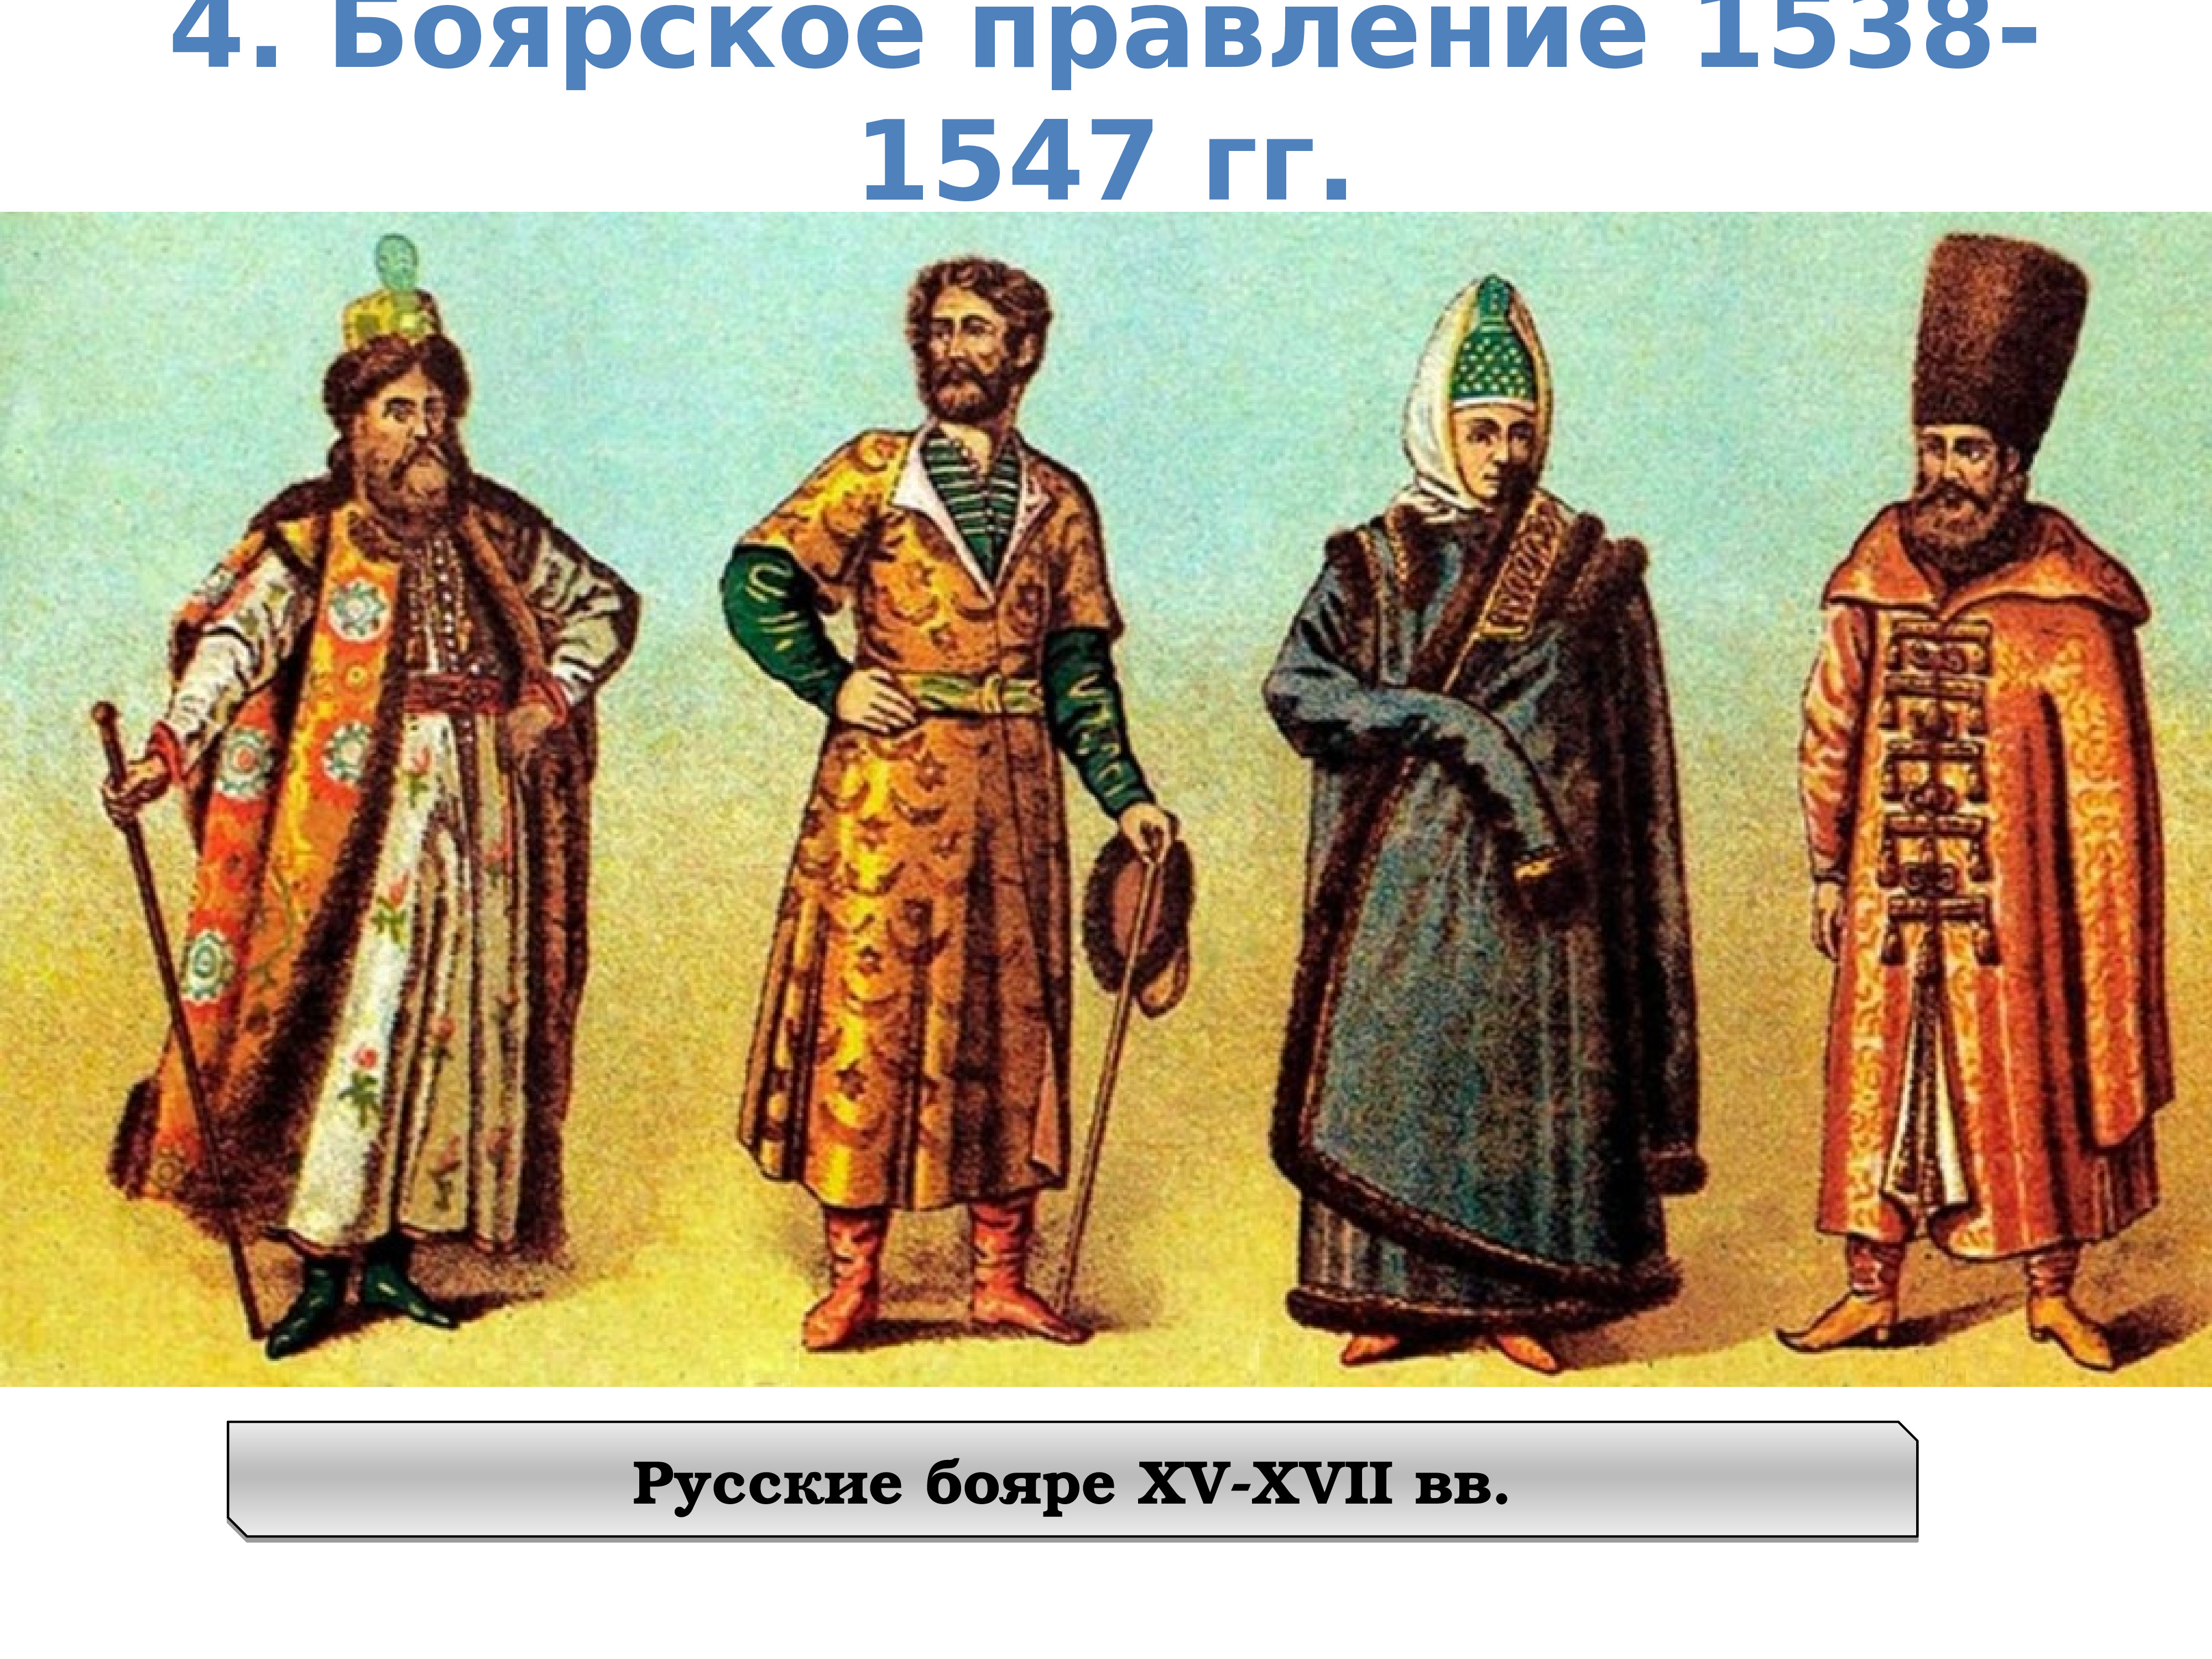 Одежда бояр в древней Руси